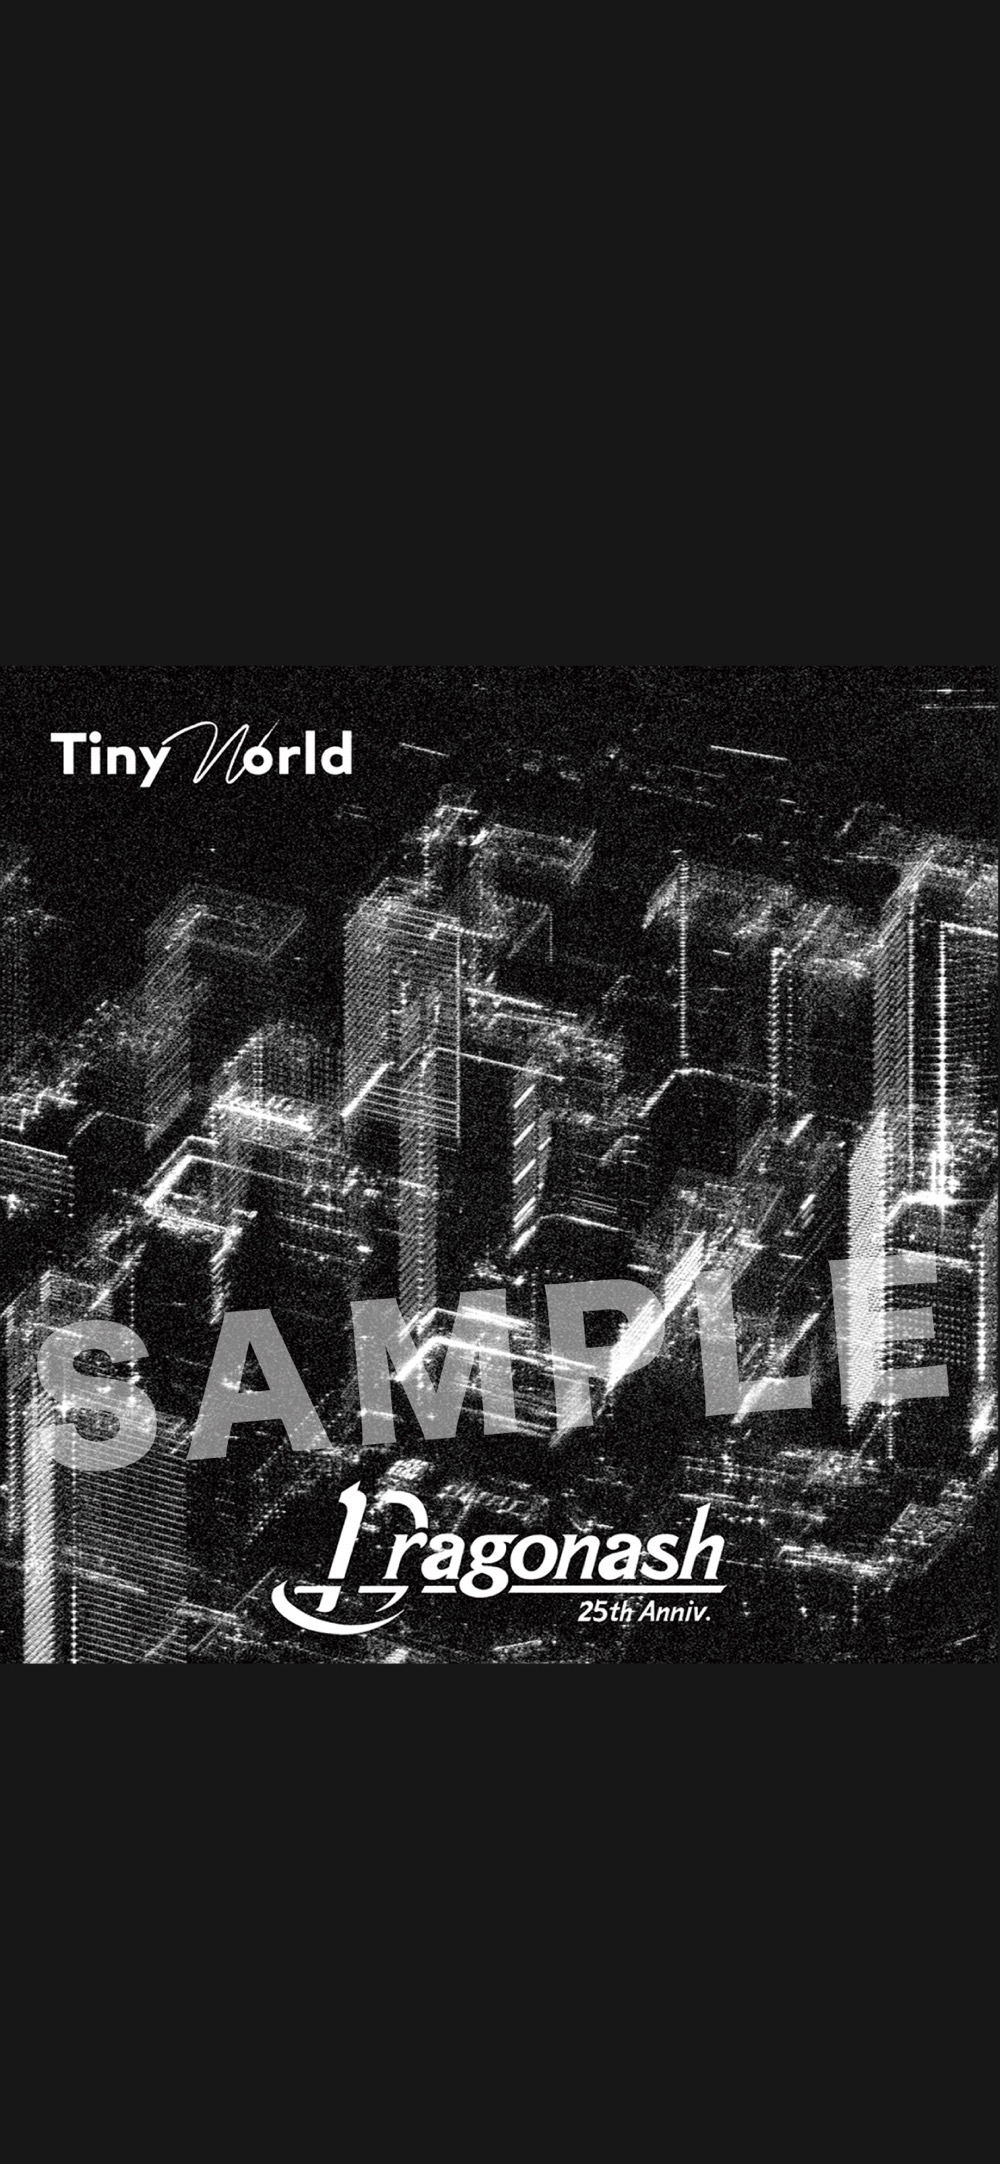 Dragon Ash、ドラマ『インビジブル』初回放送で初解禁された「Tiny World」MVのプレミア公開が決定 - 画像一覧（3/5）